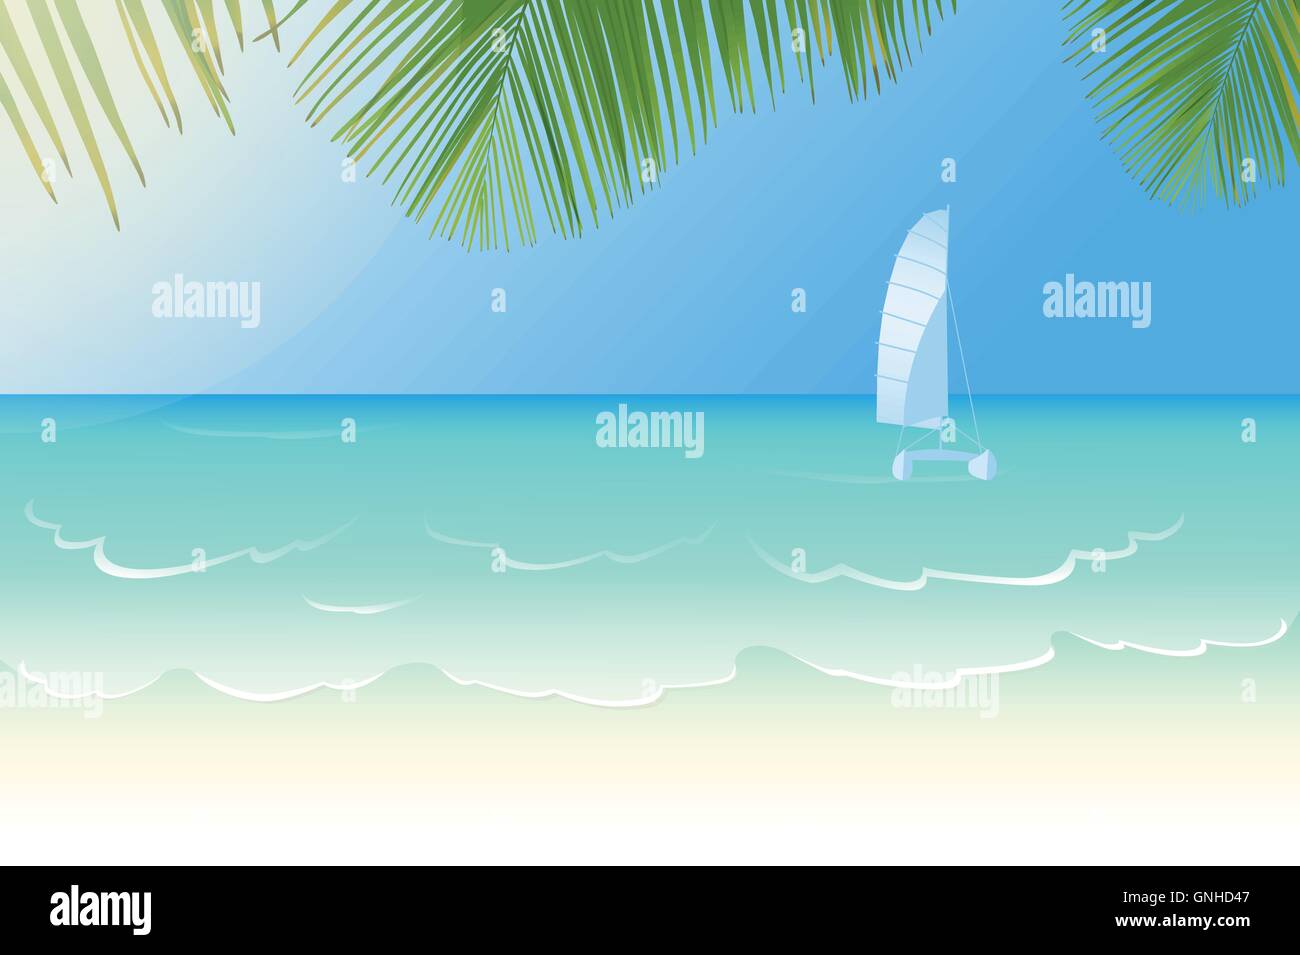 Plage de sable blanc idyllique baigné par les vagues d'une mer bleue cristalline, catamaran et feuilles de palmier vector illustration Illustration de Vecteur